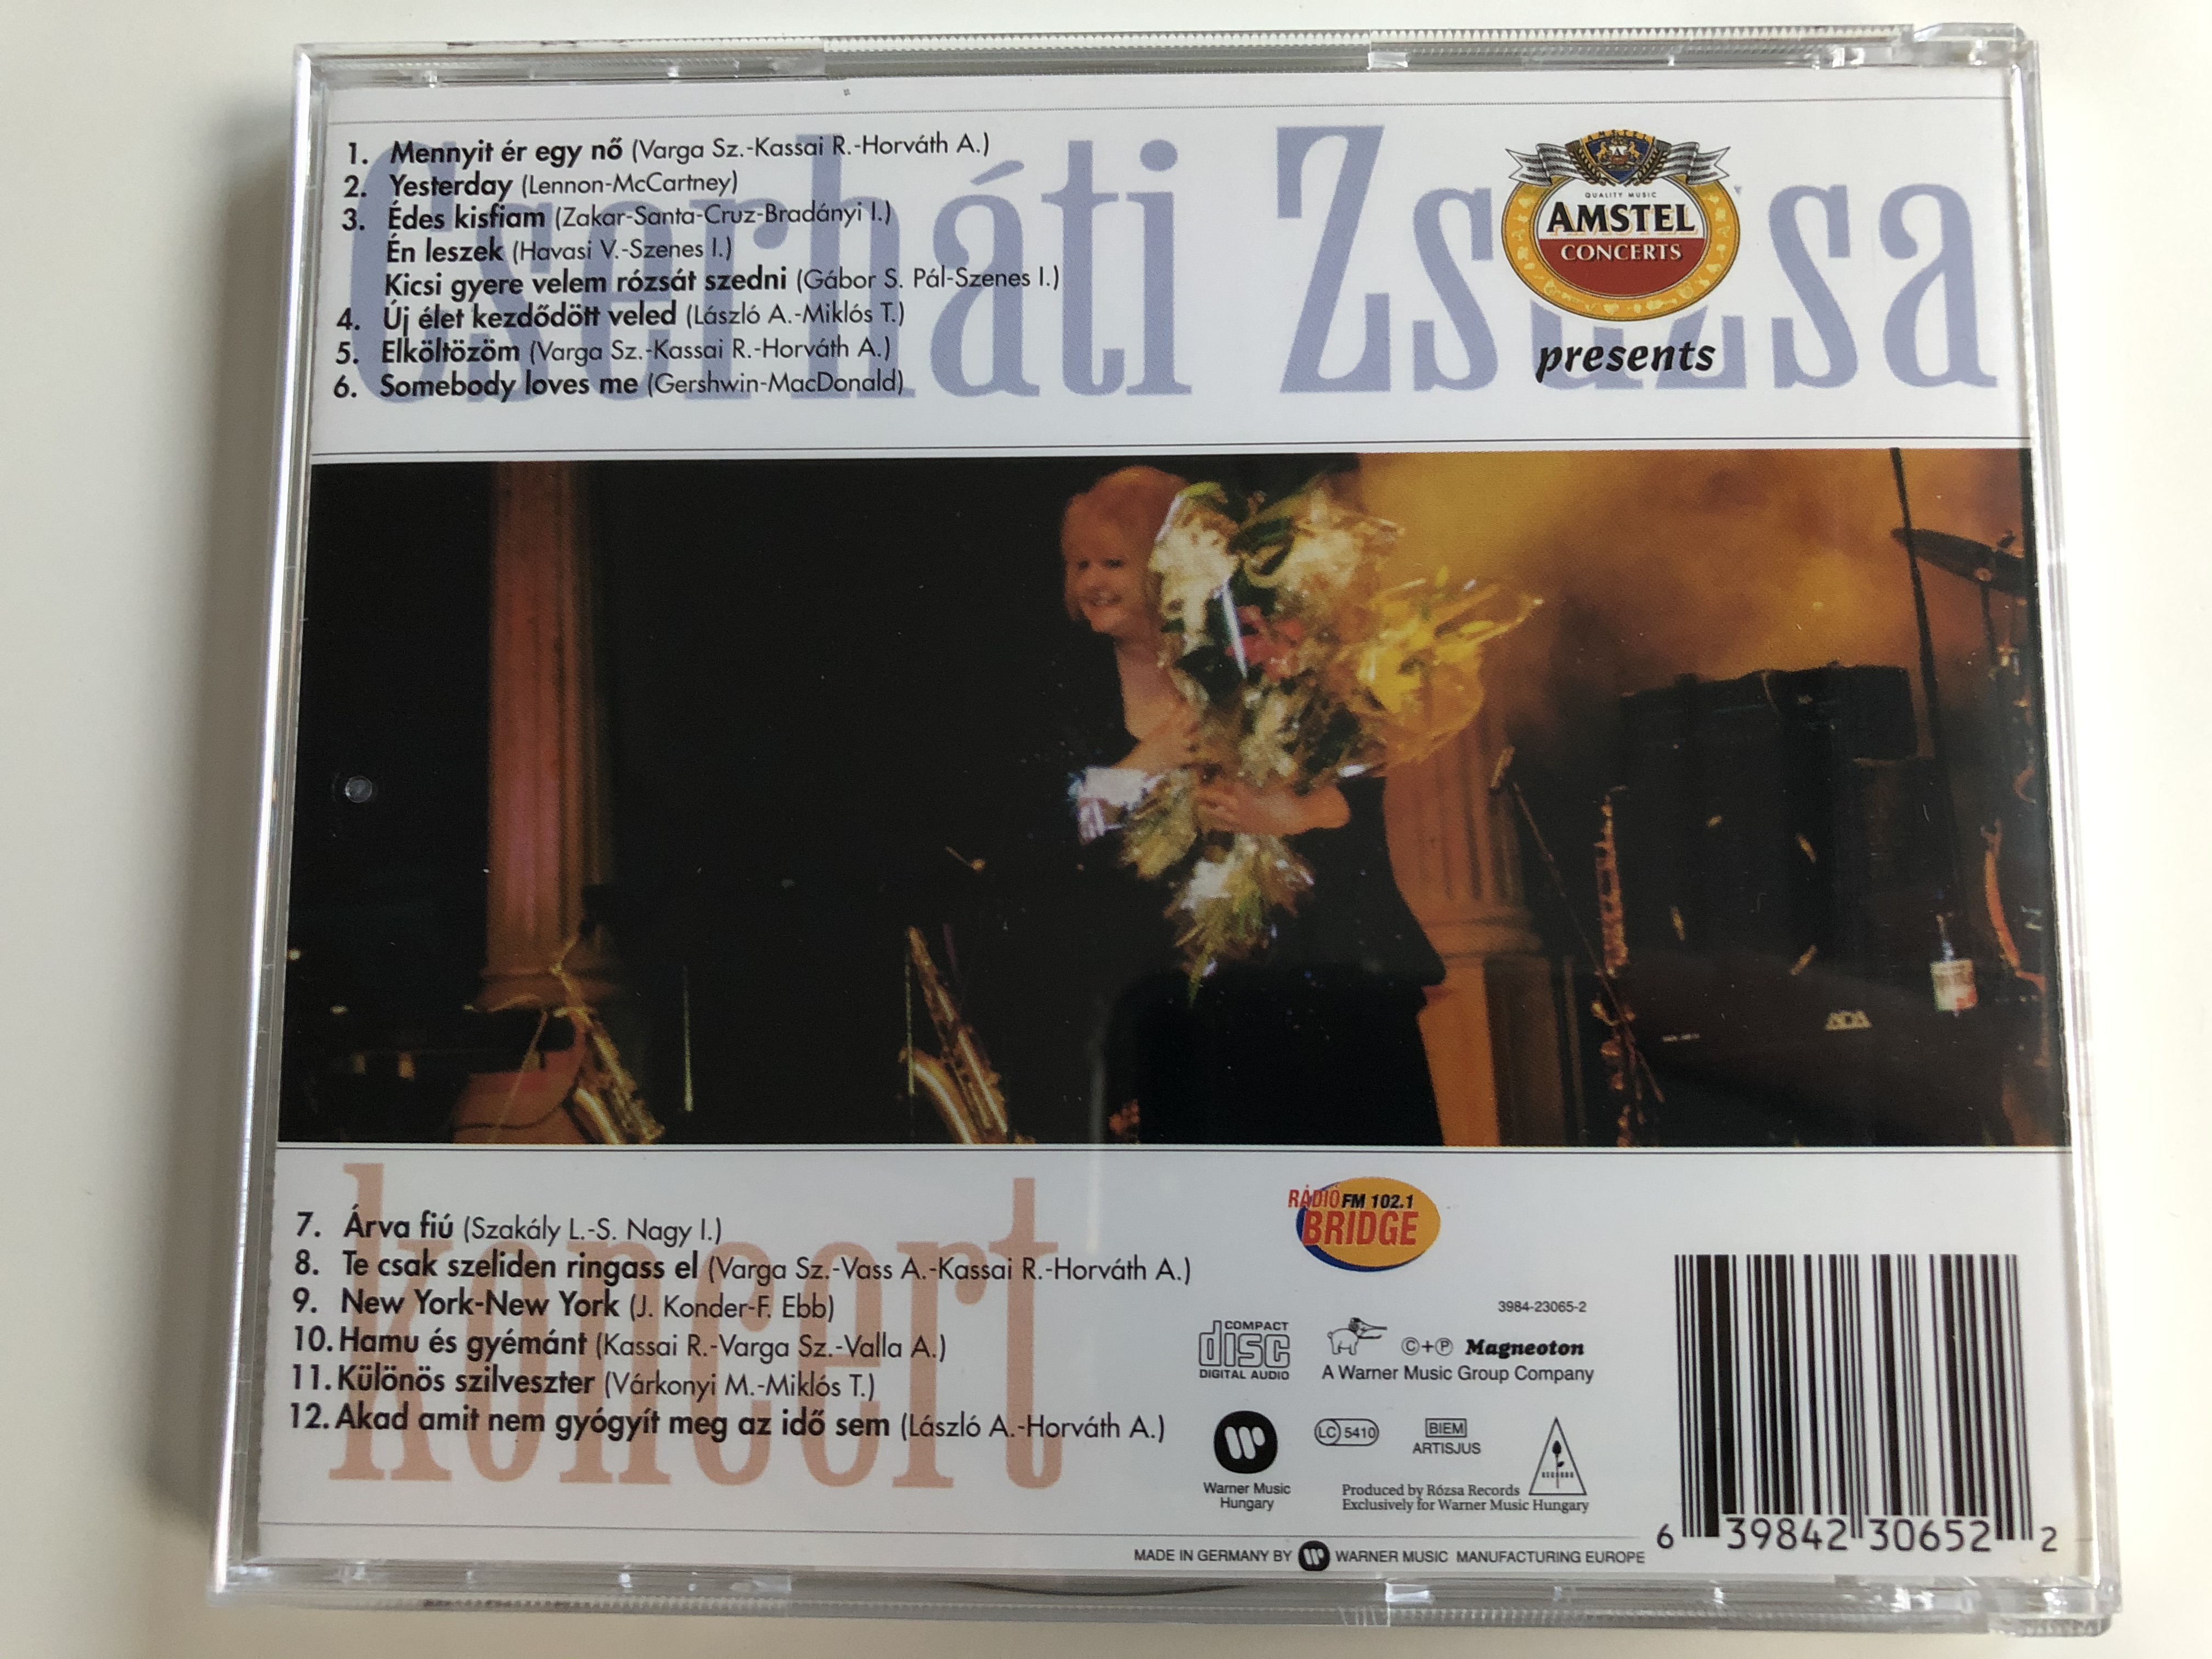 cserh-ti-zsuzsa-koncert-warner-music-hungary-audio-cd-1997-3984-23065-2-5-.jpg